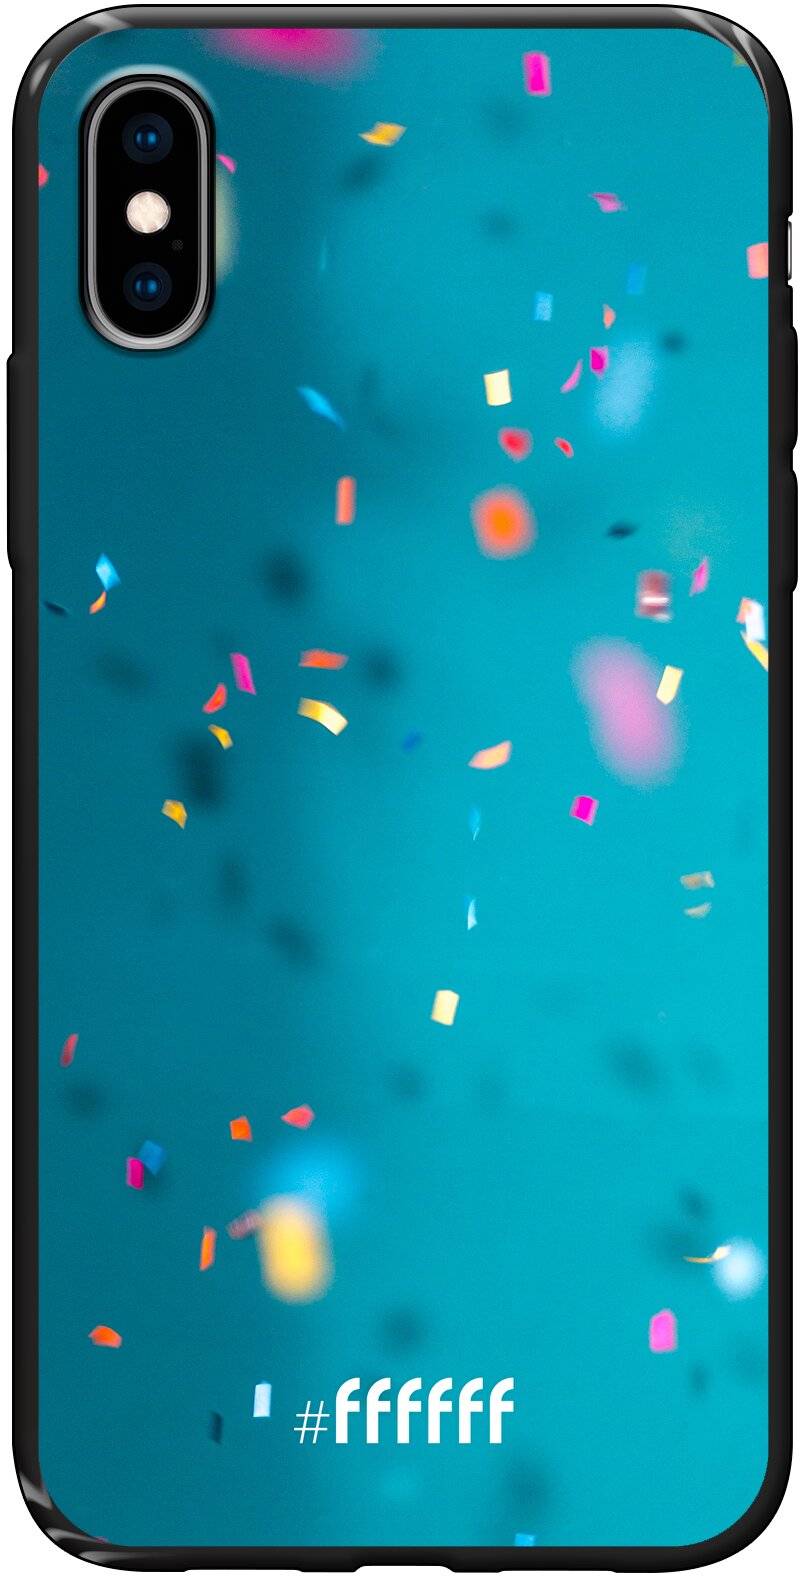 Confetti iPhone X